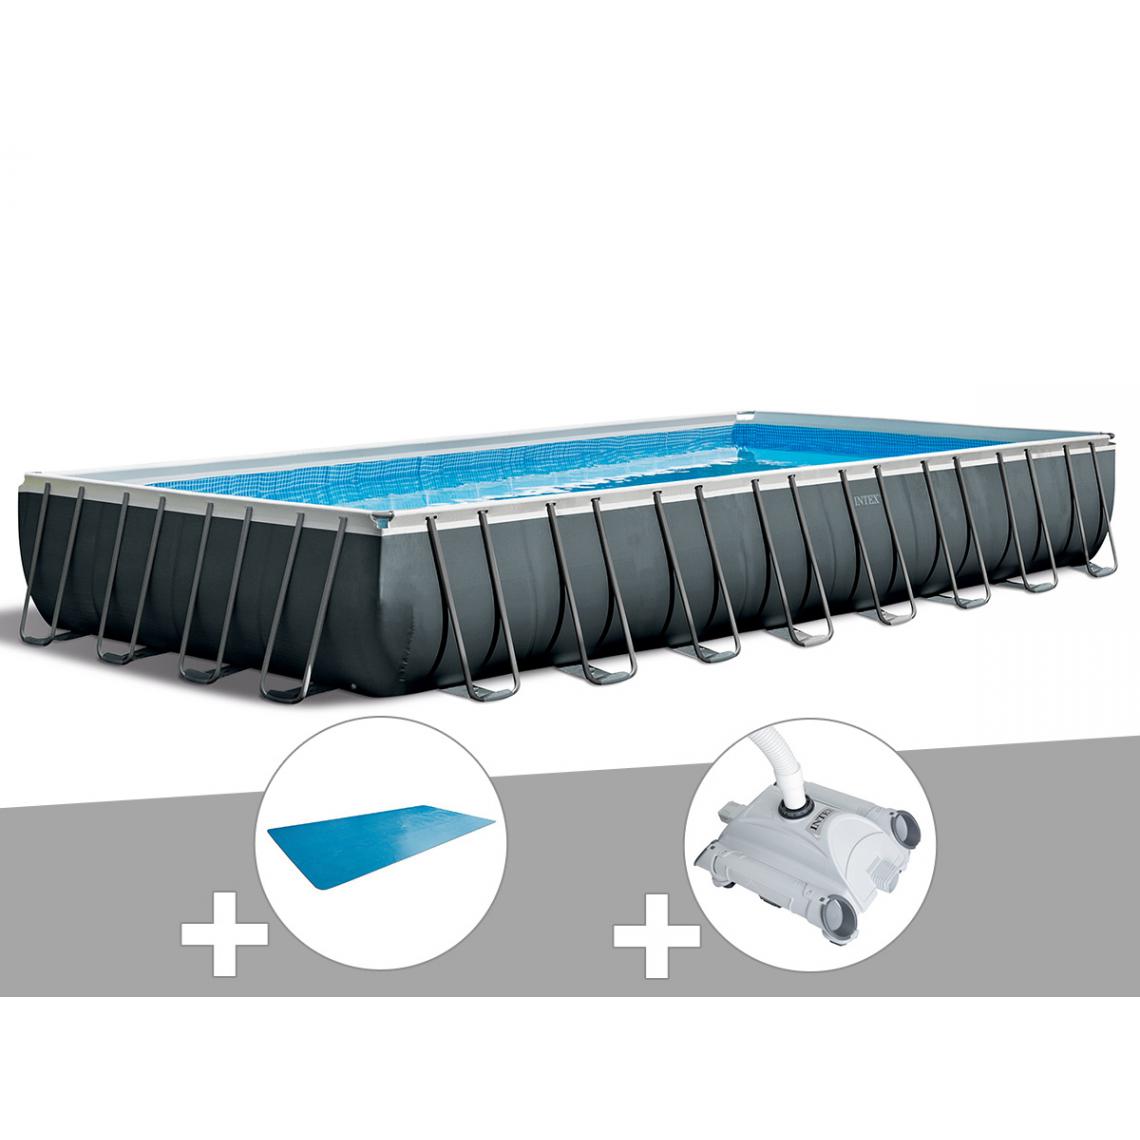 Intex - Kit piscine tubulaire Intex Ultra XTR Frame rectangulaire 9,75 x 4,88 x 1,32 m + Bâche à bulles + Robot nettoyeur - Piscine Tubulaire